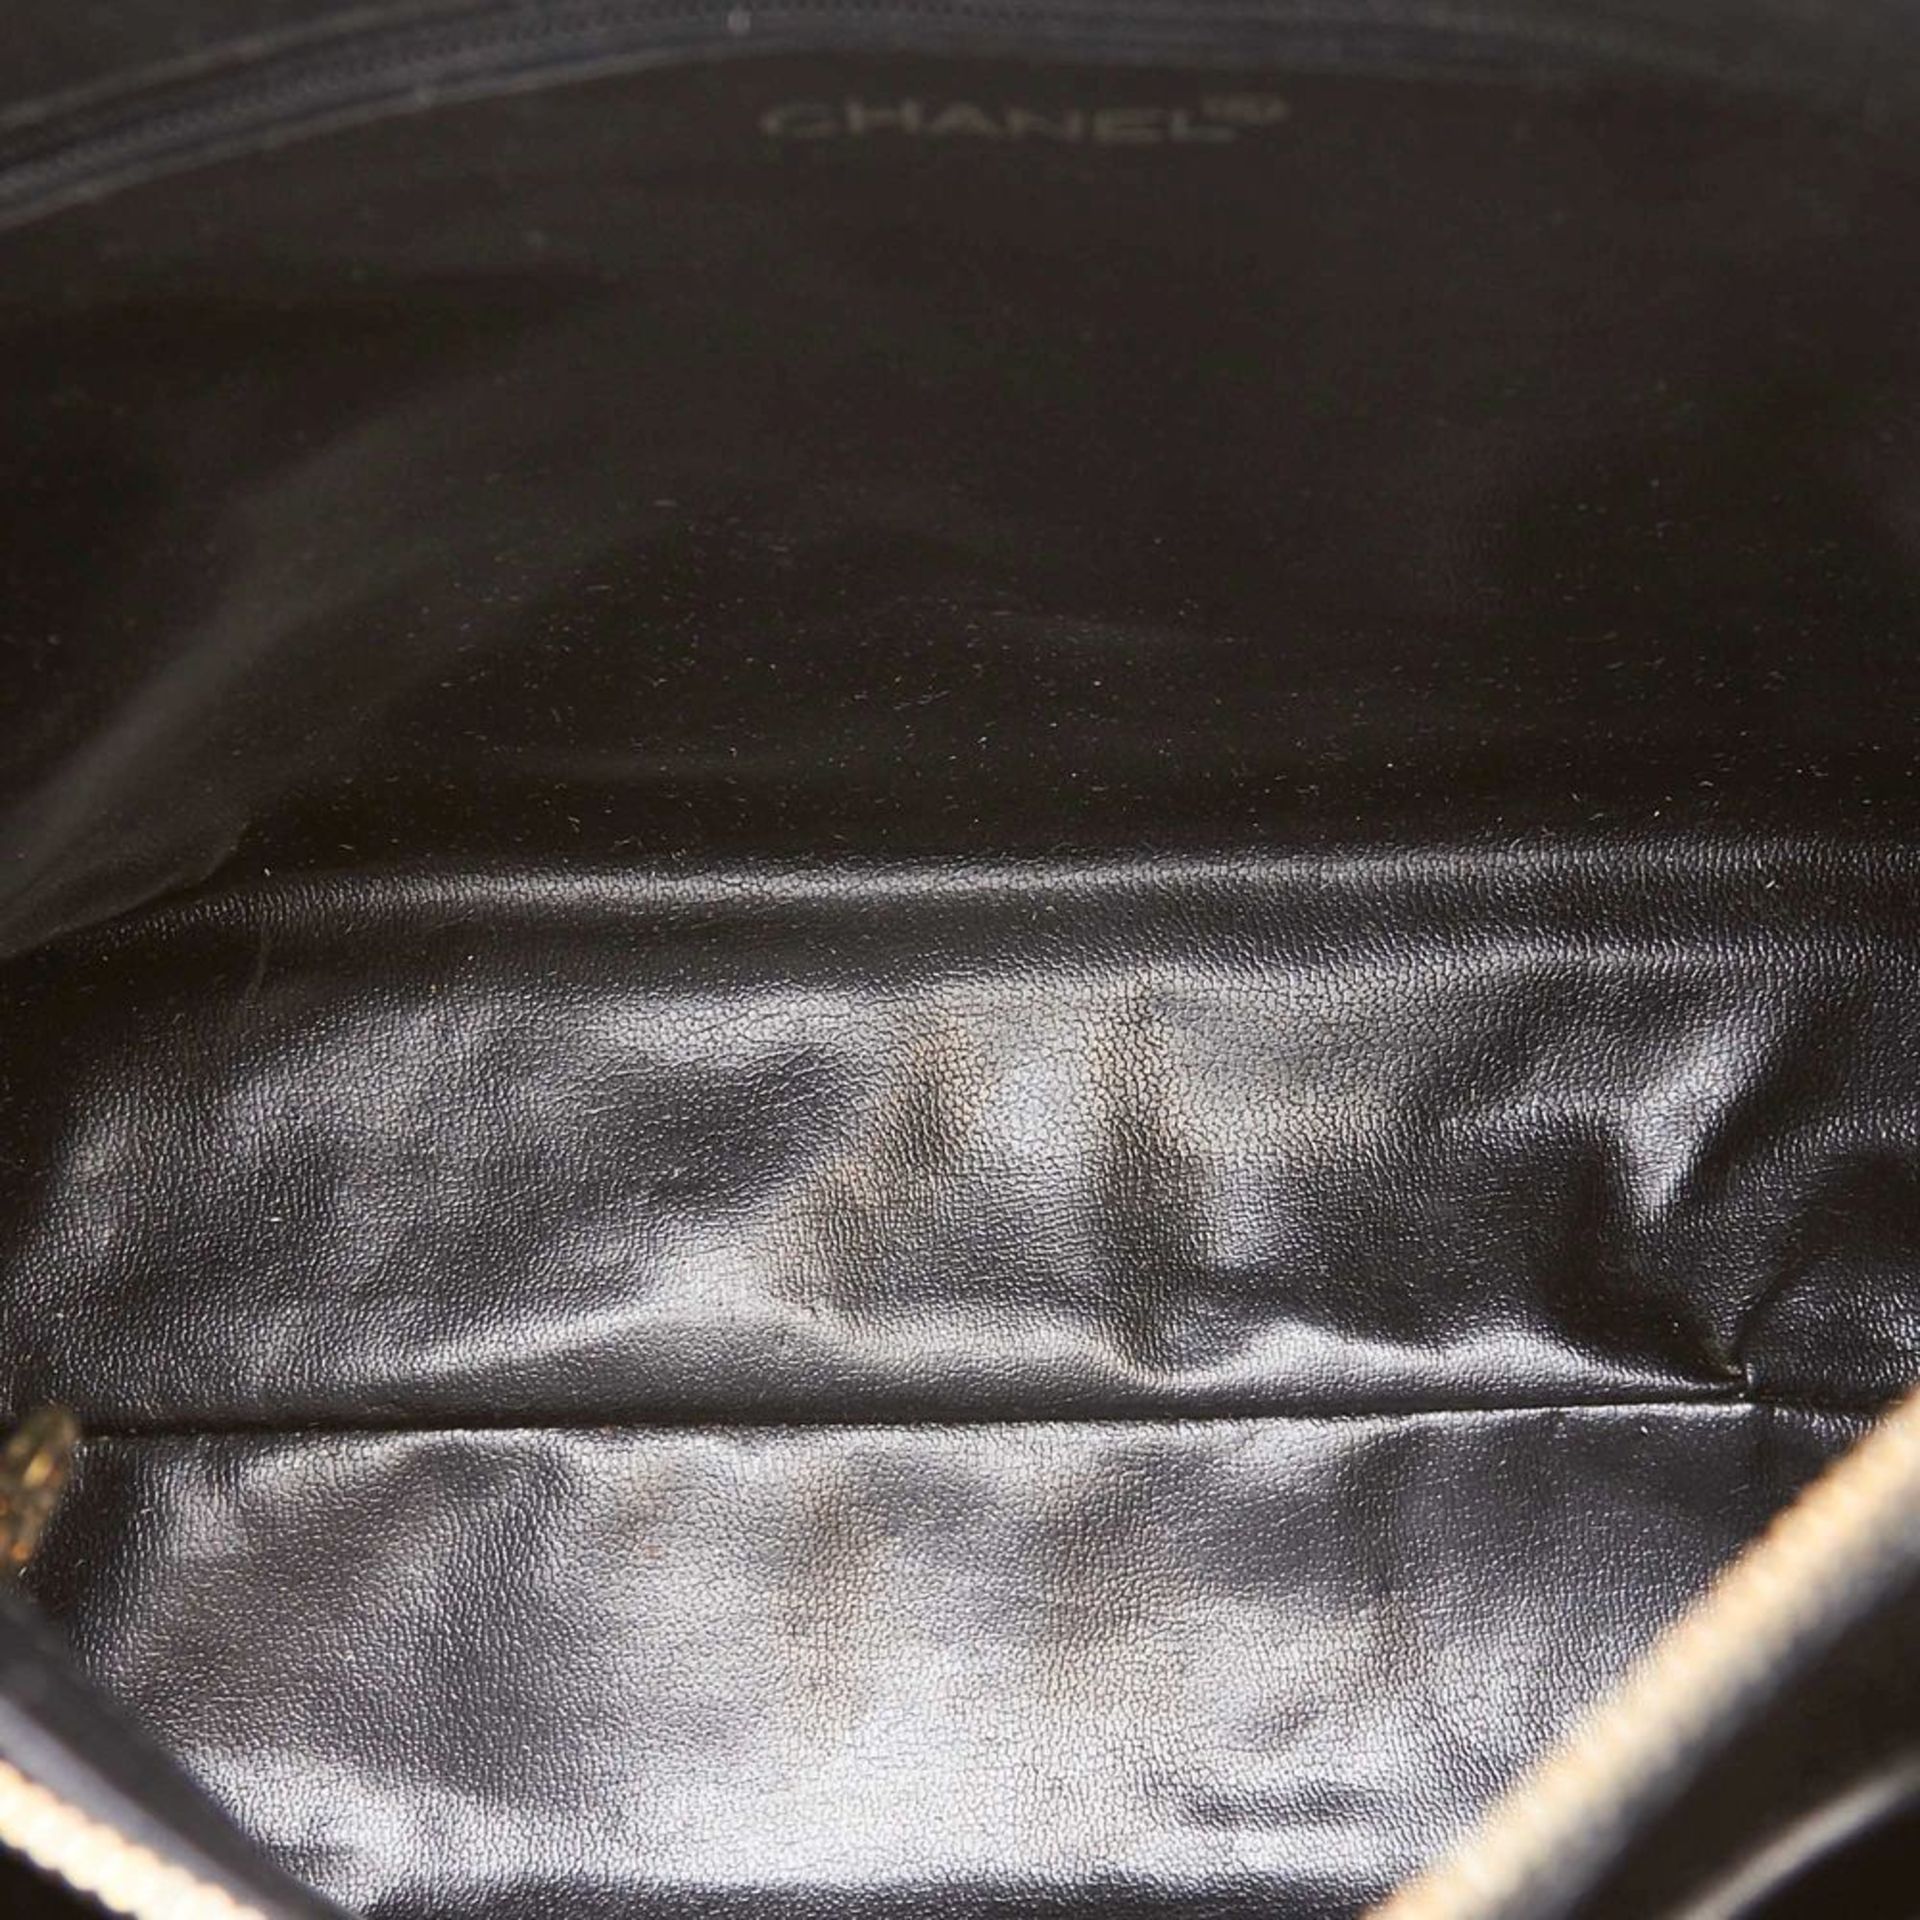 A Chanel 'CC' caviar leather shoulder bag,featuring a caviar leather body, flat leather straps - Bild 5 aus 6